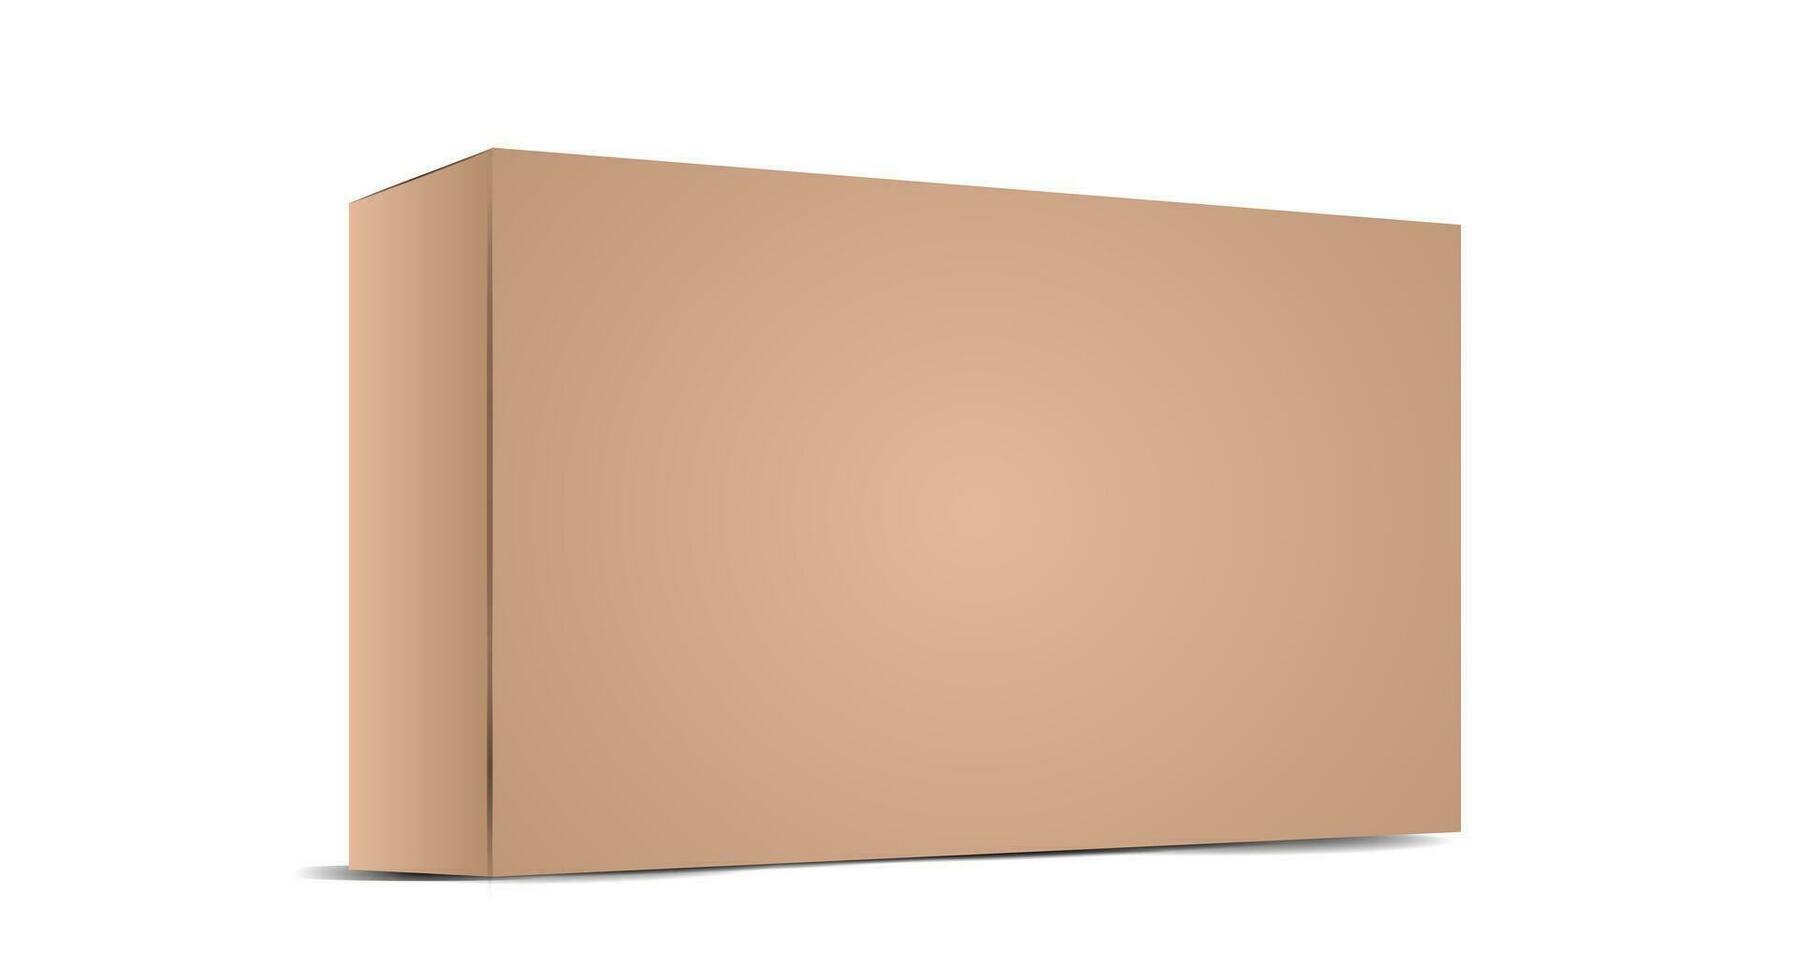 realistisk brun tömma kartong paket låda mall. kartong lådor med skuggor för branding din Produkter. vektor